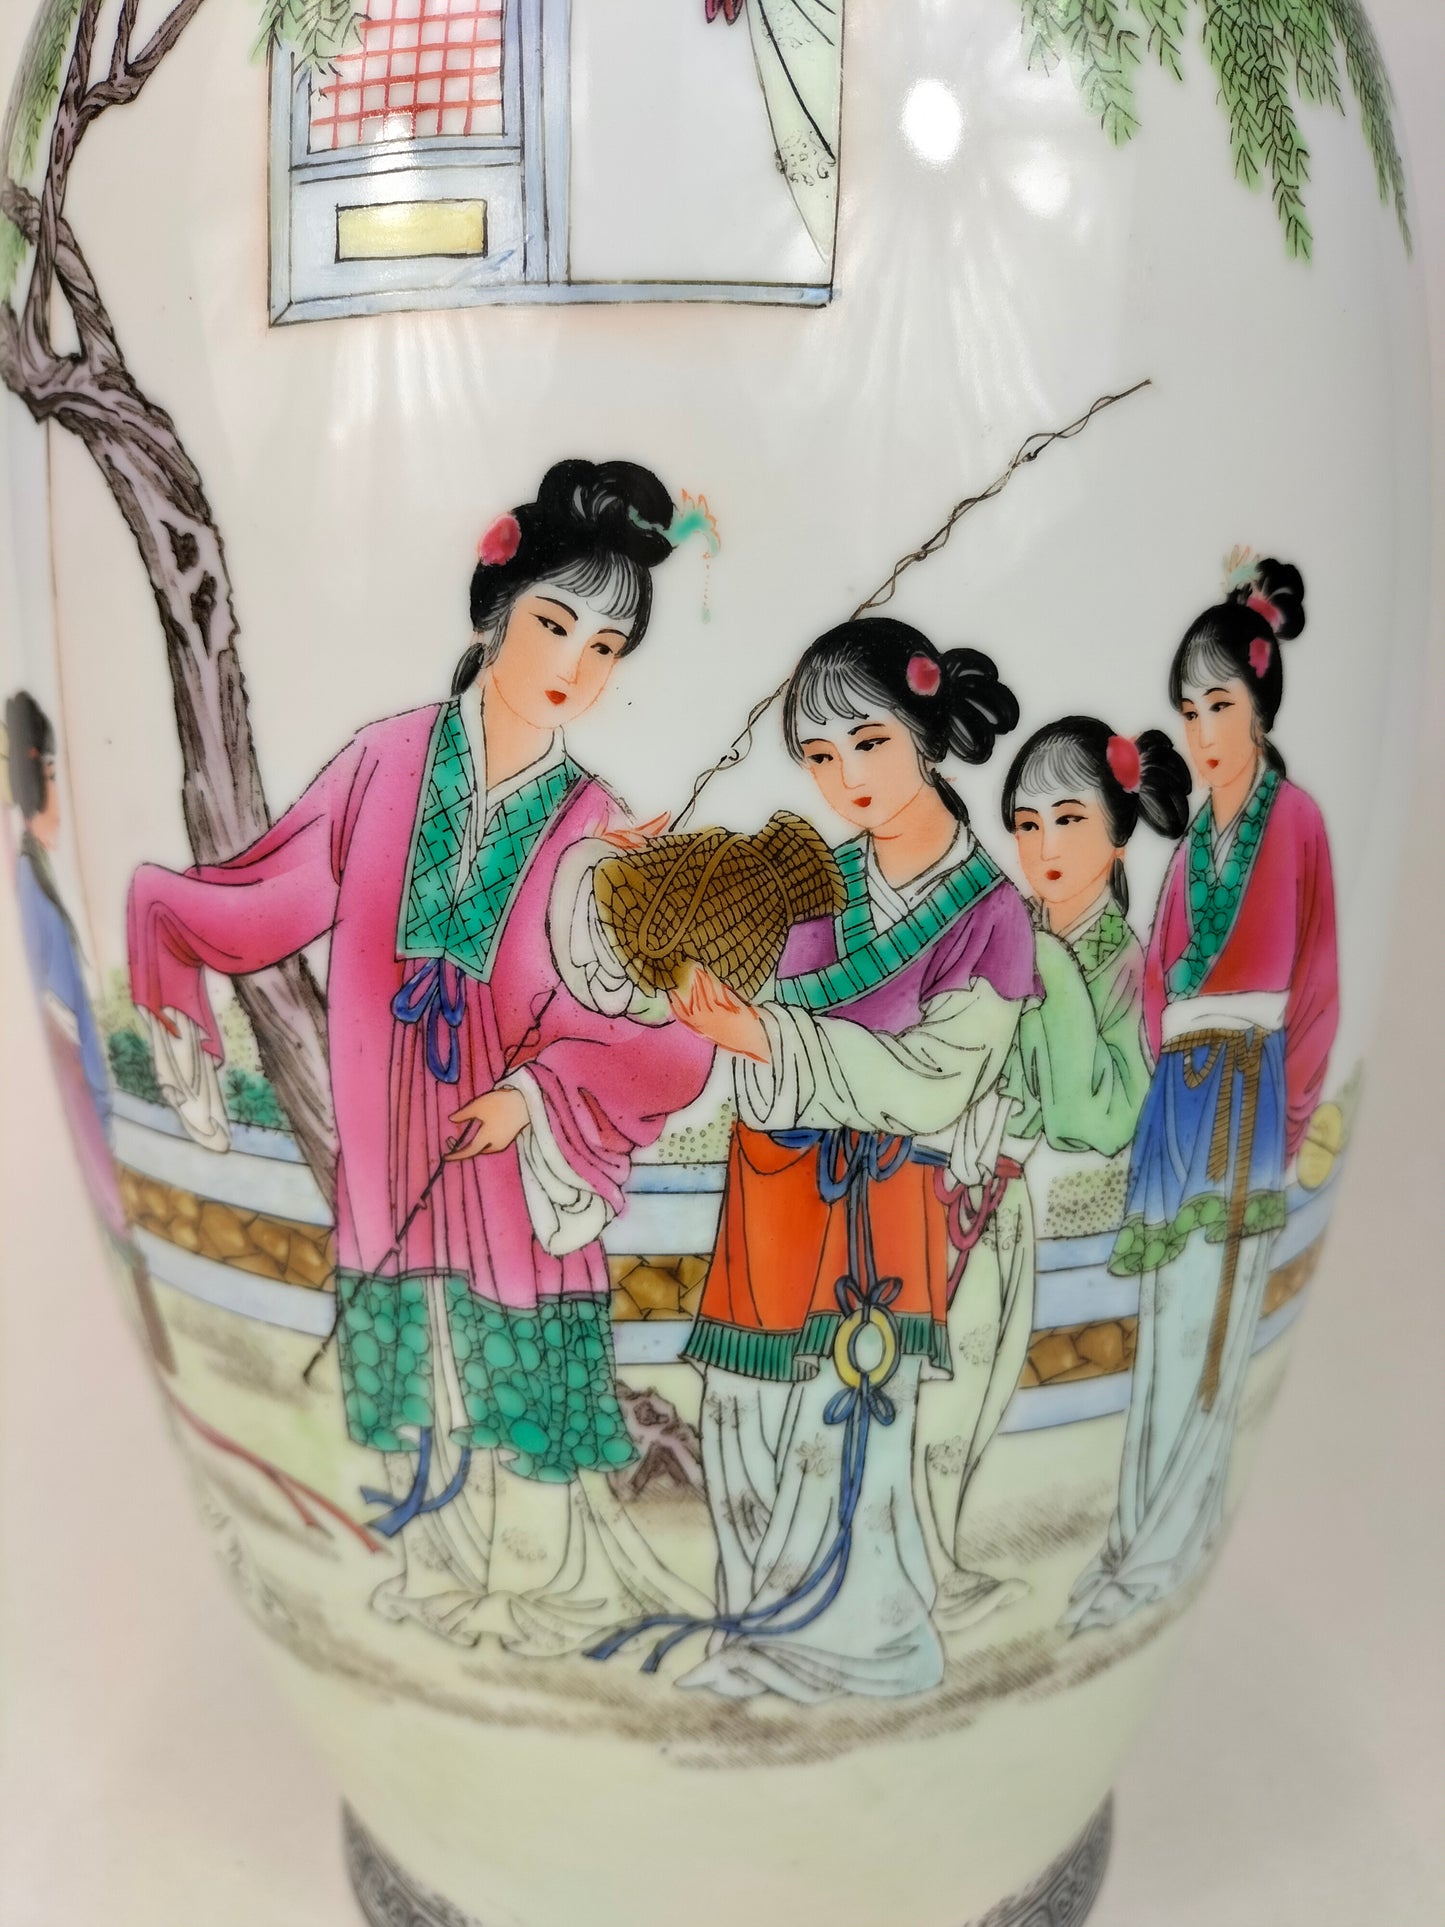 Grand vase chinois polychrome à décor d'une scène de jardin // Jingdezhen - XXème siècle